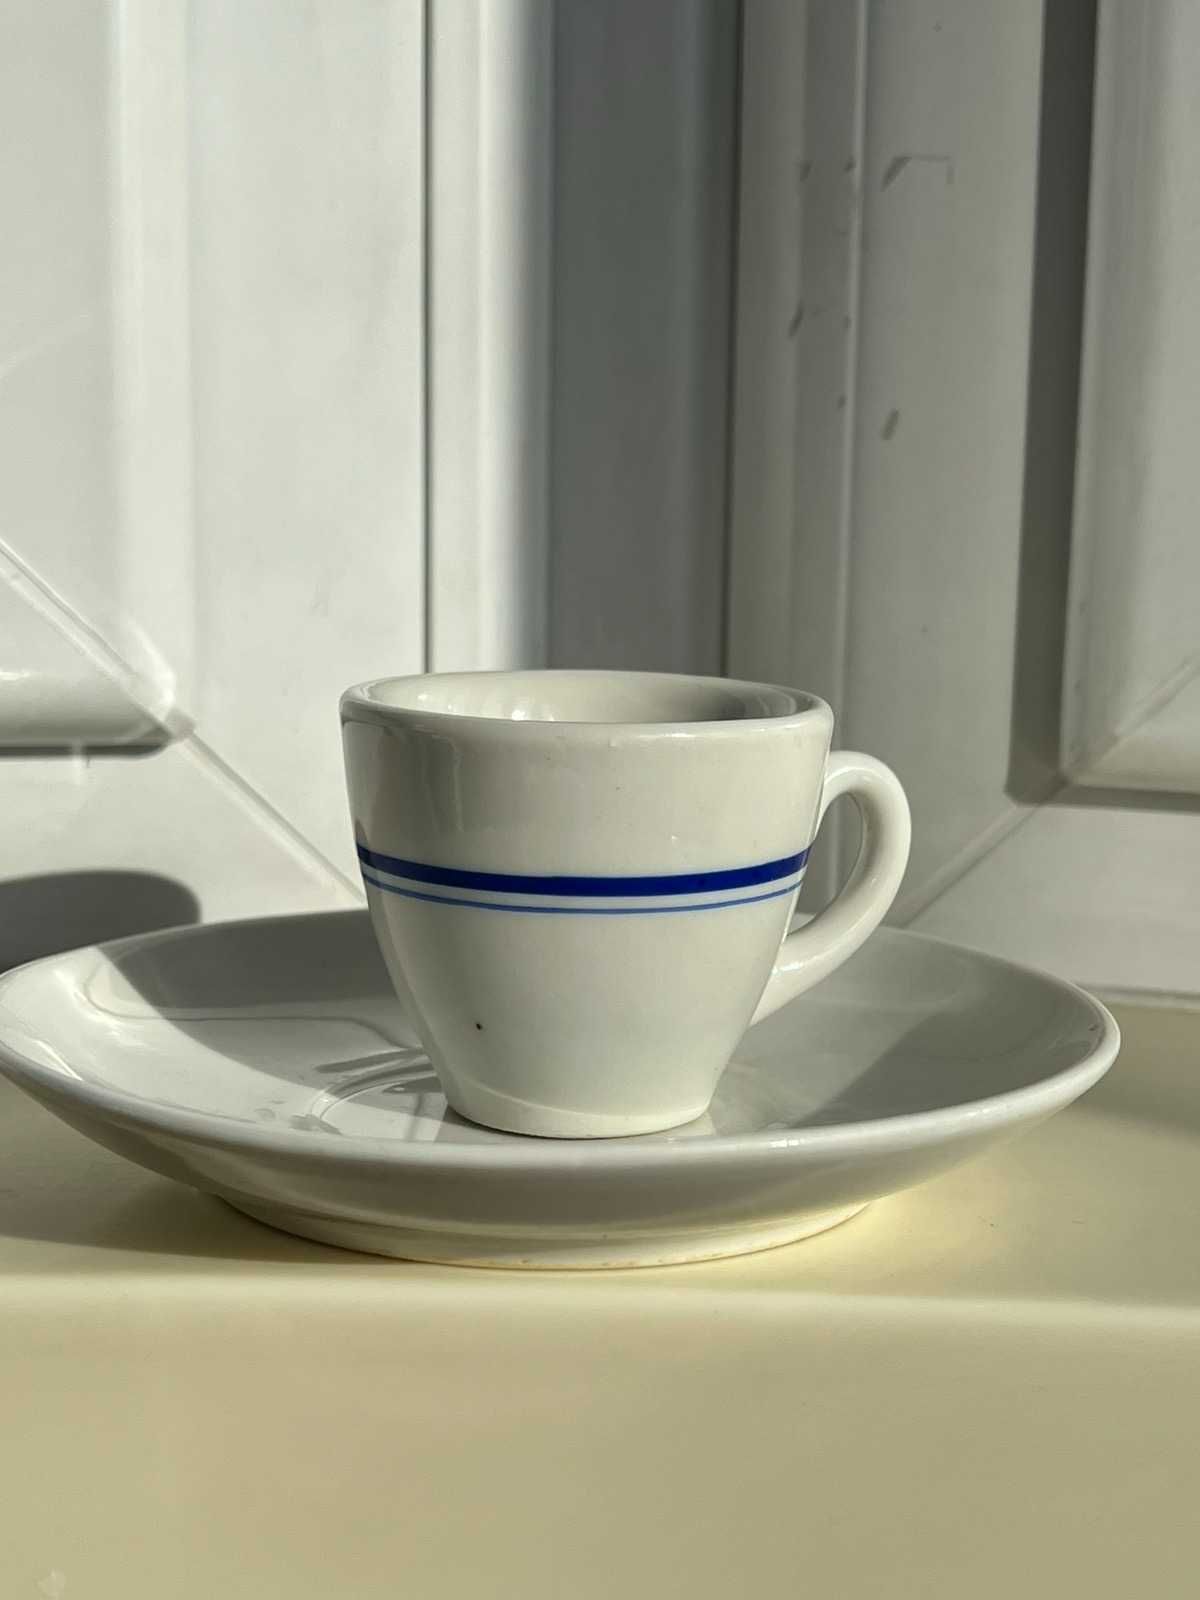 первые кофейные чашки эспрессо с Бразильского судна 60-х годов